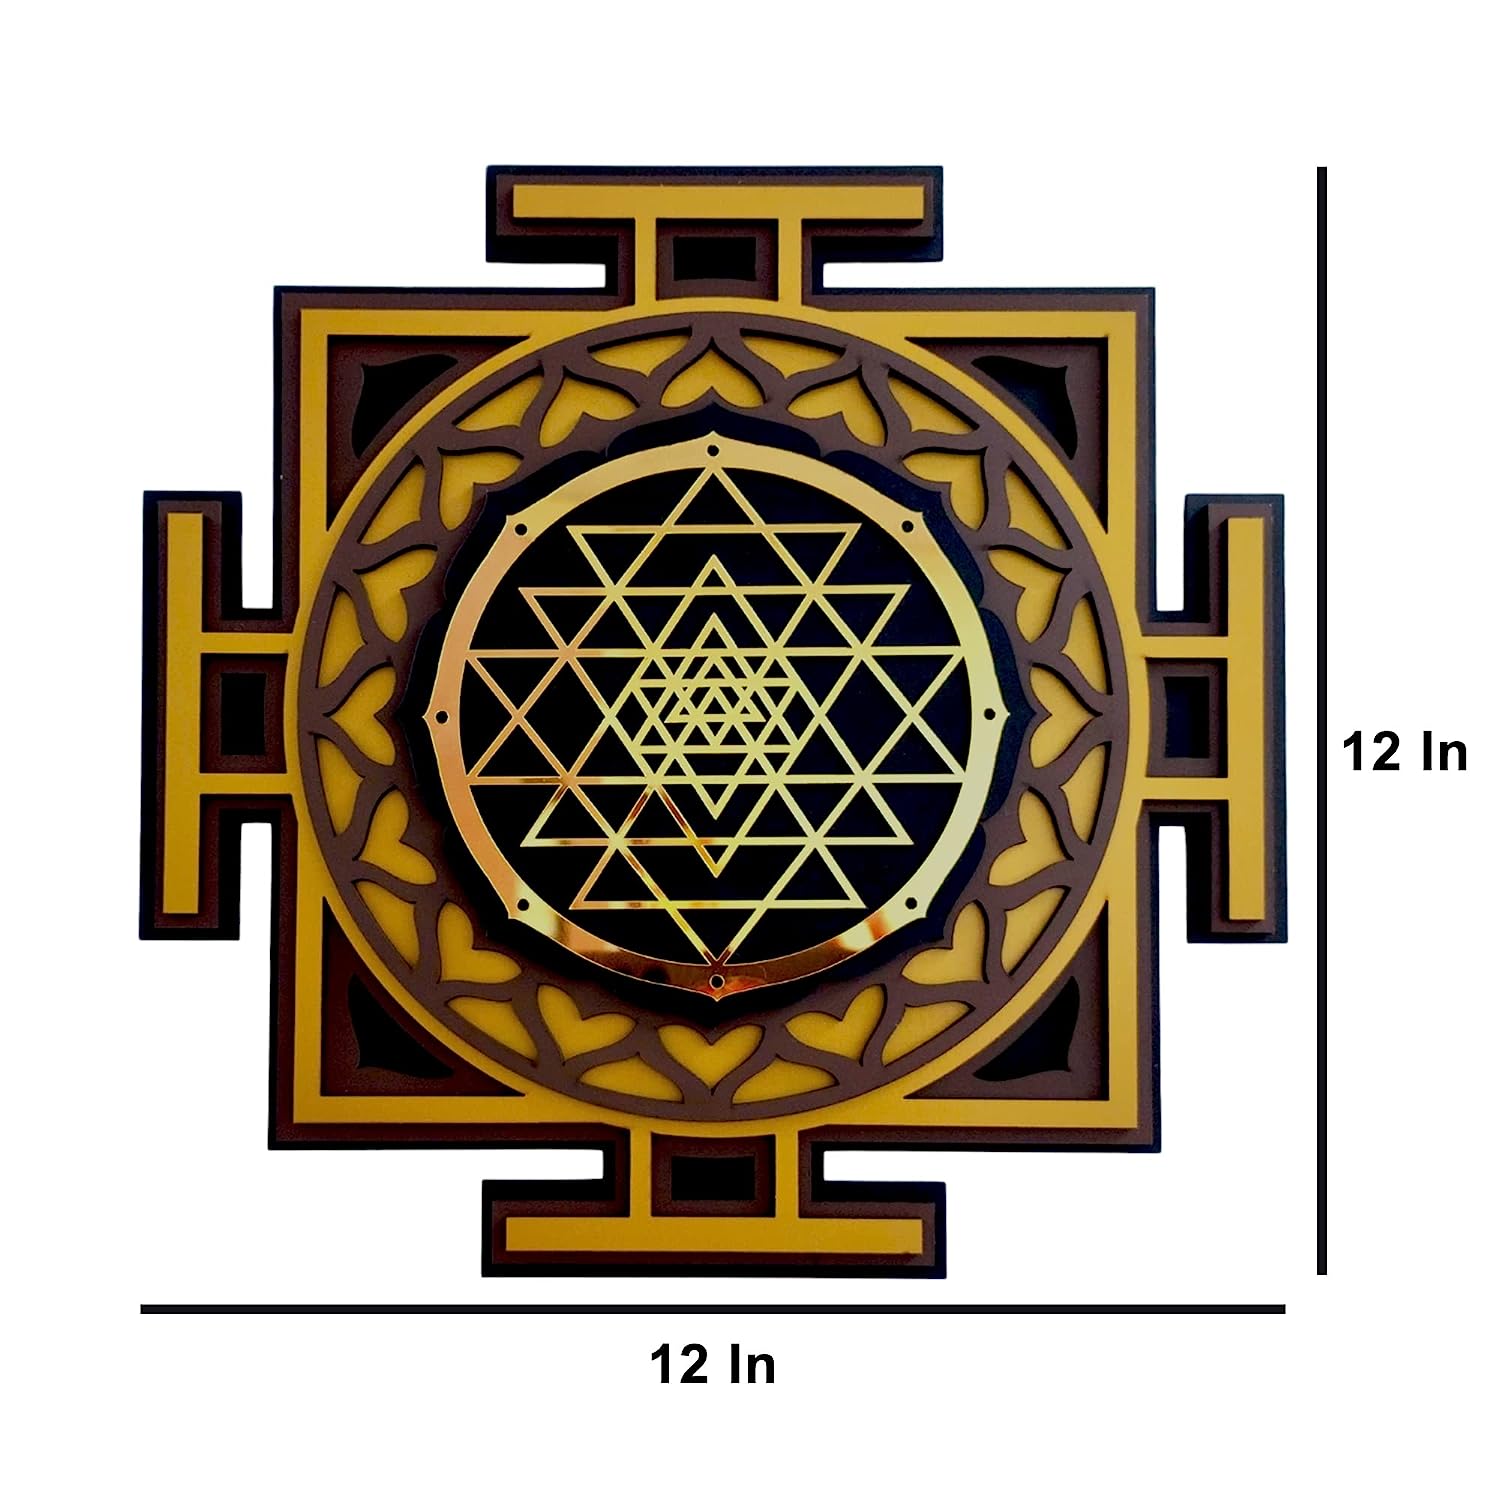 Size of Sri Yantra Mandala Wall Decor